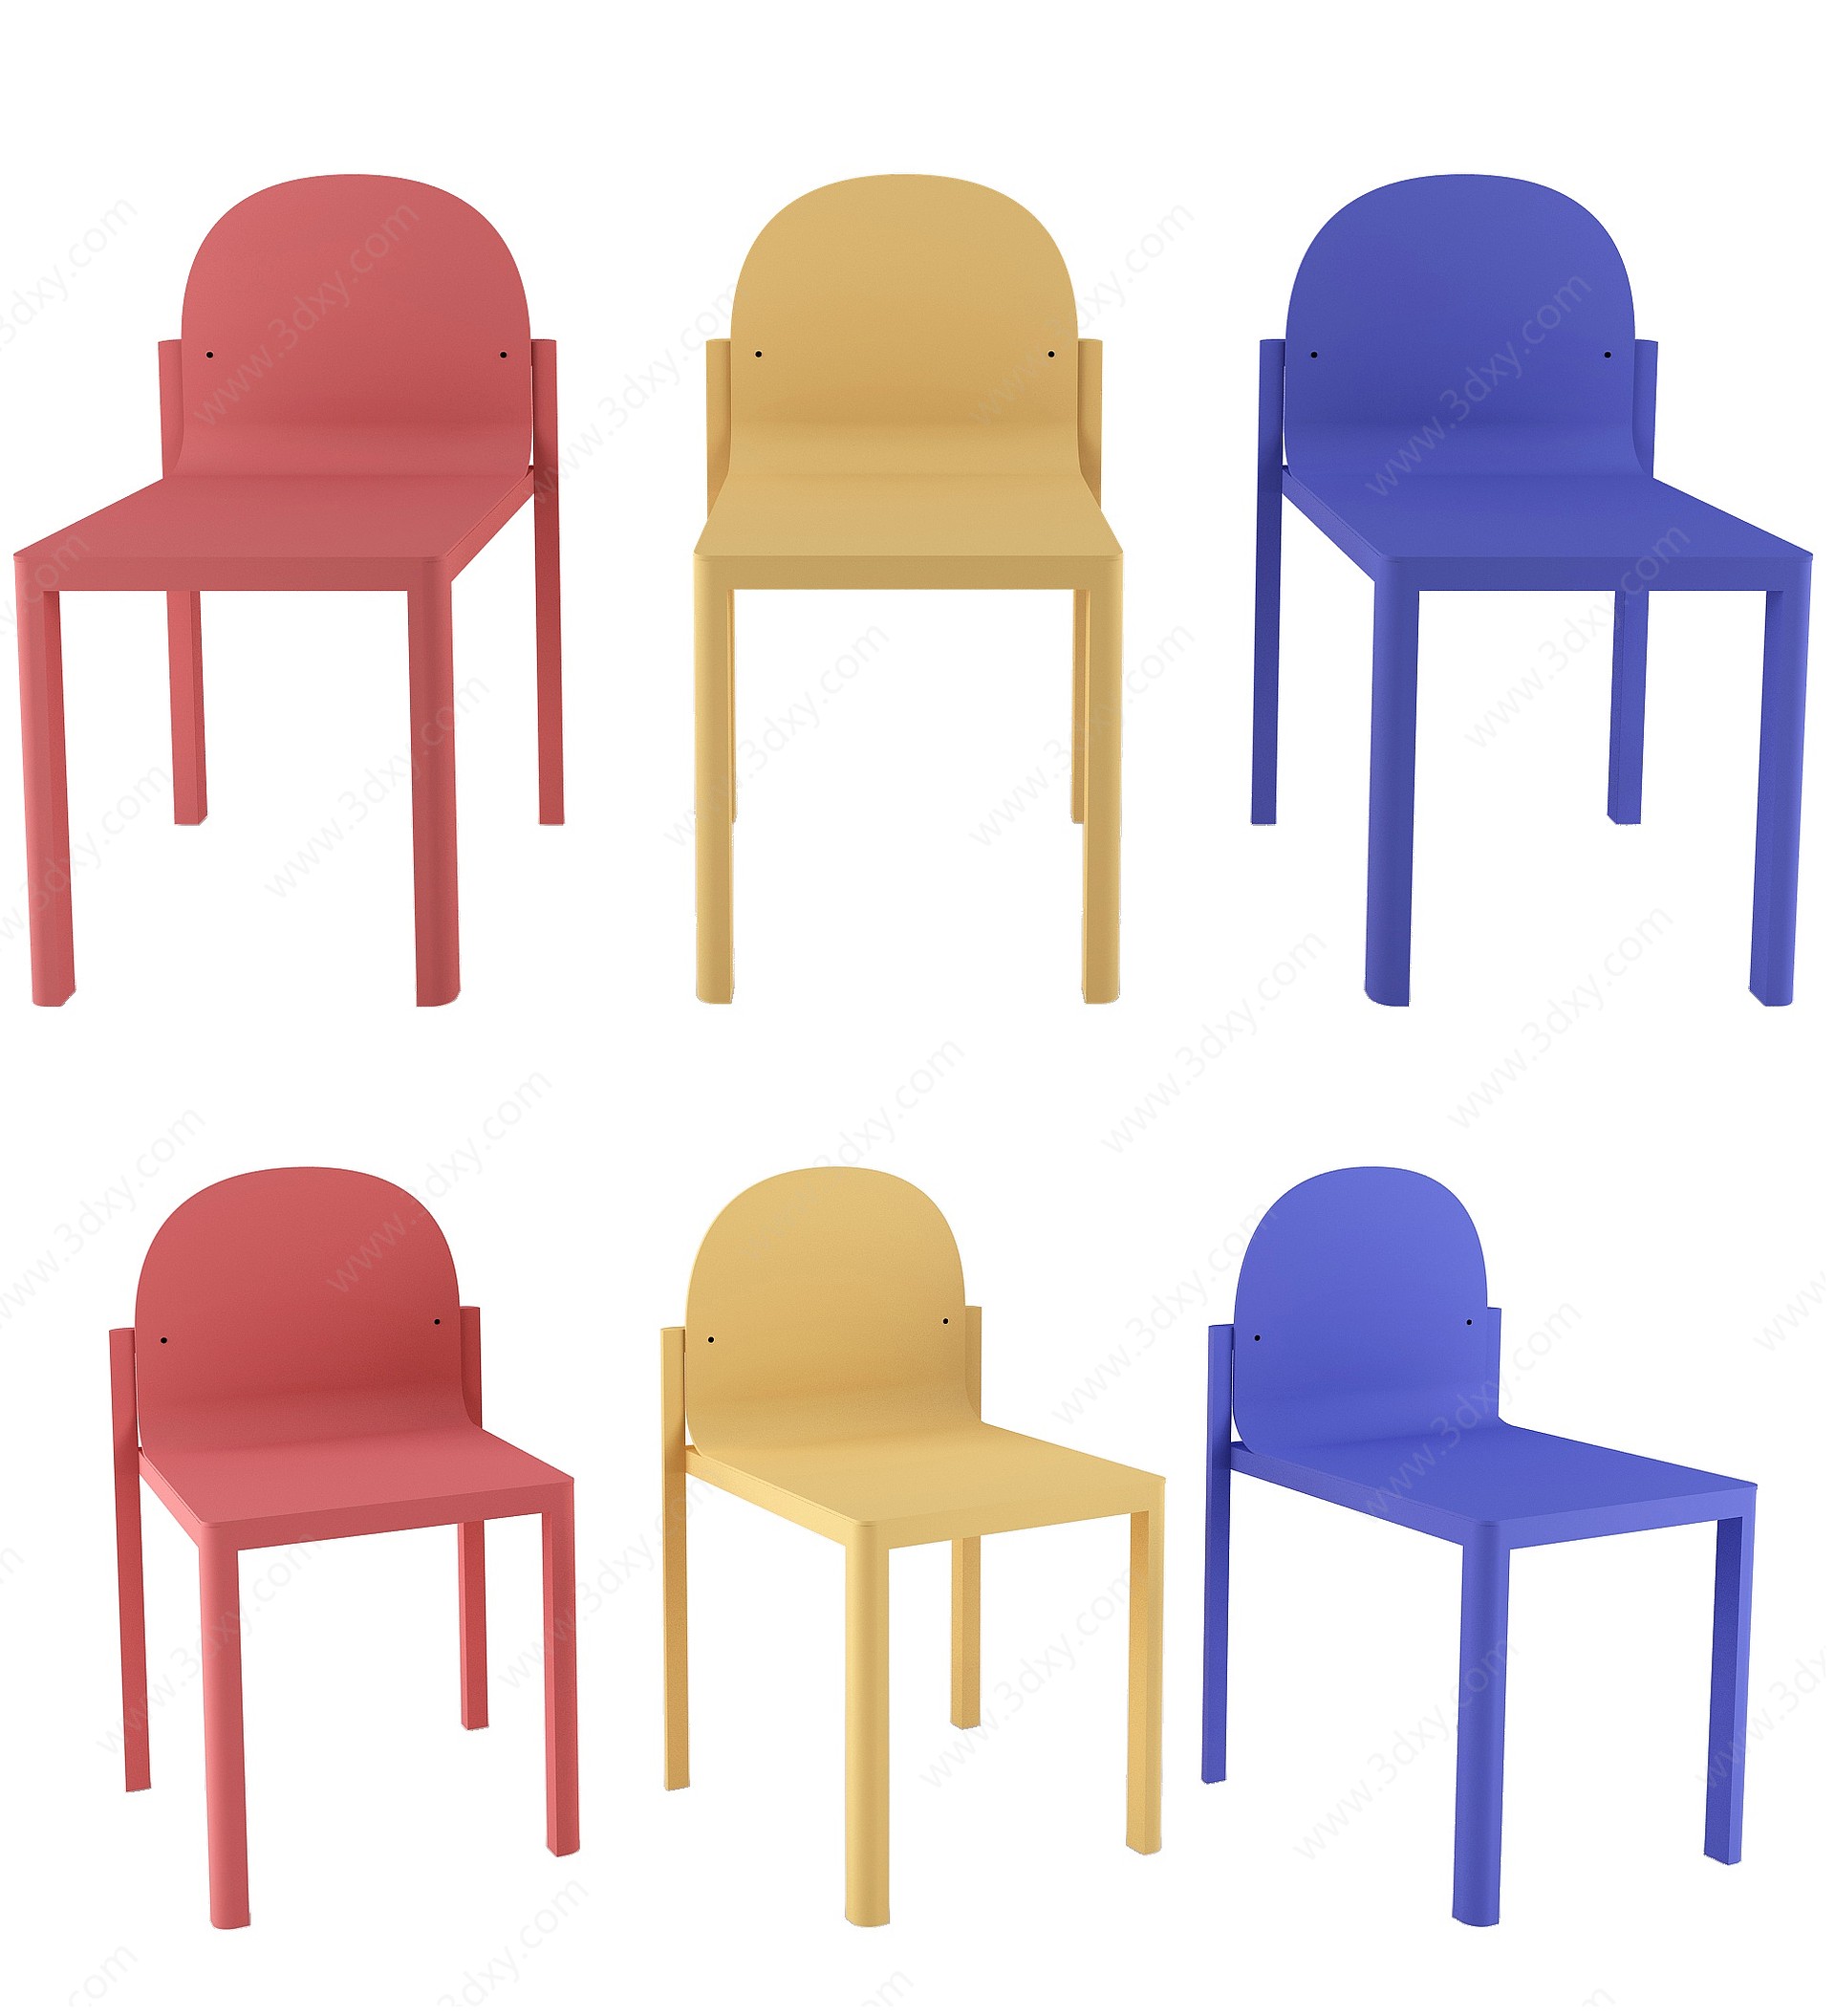 现代彩色无扶手儿童椅3D模型